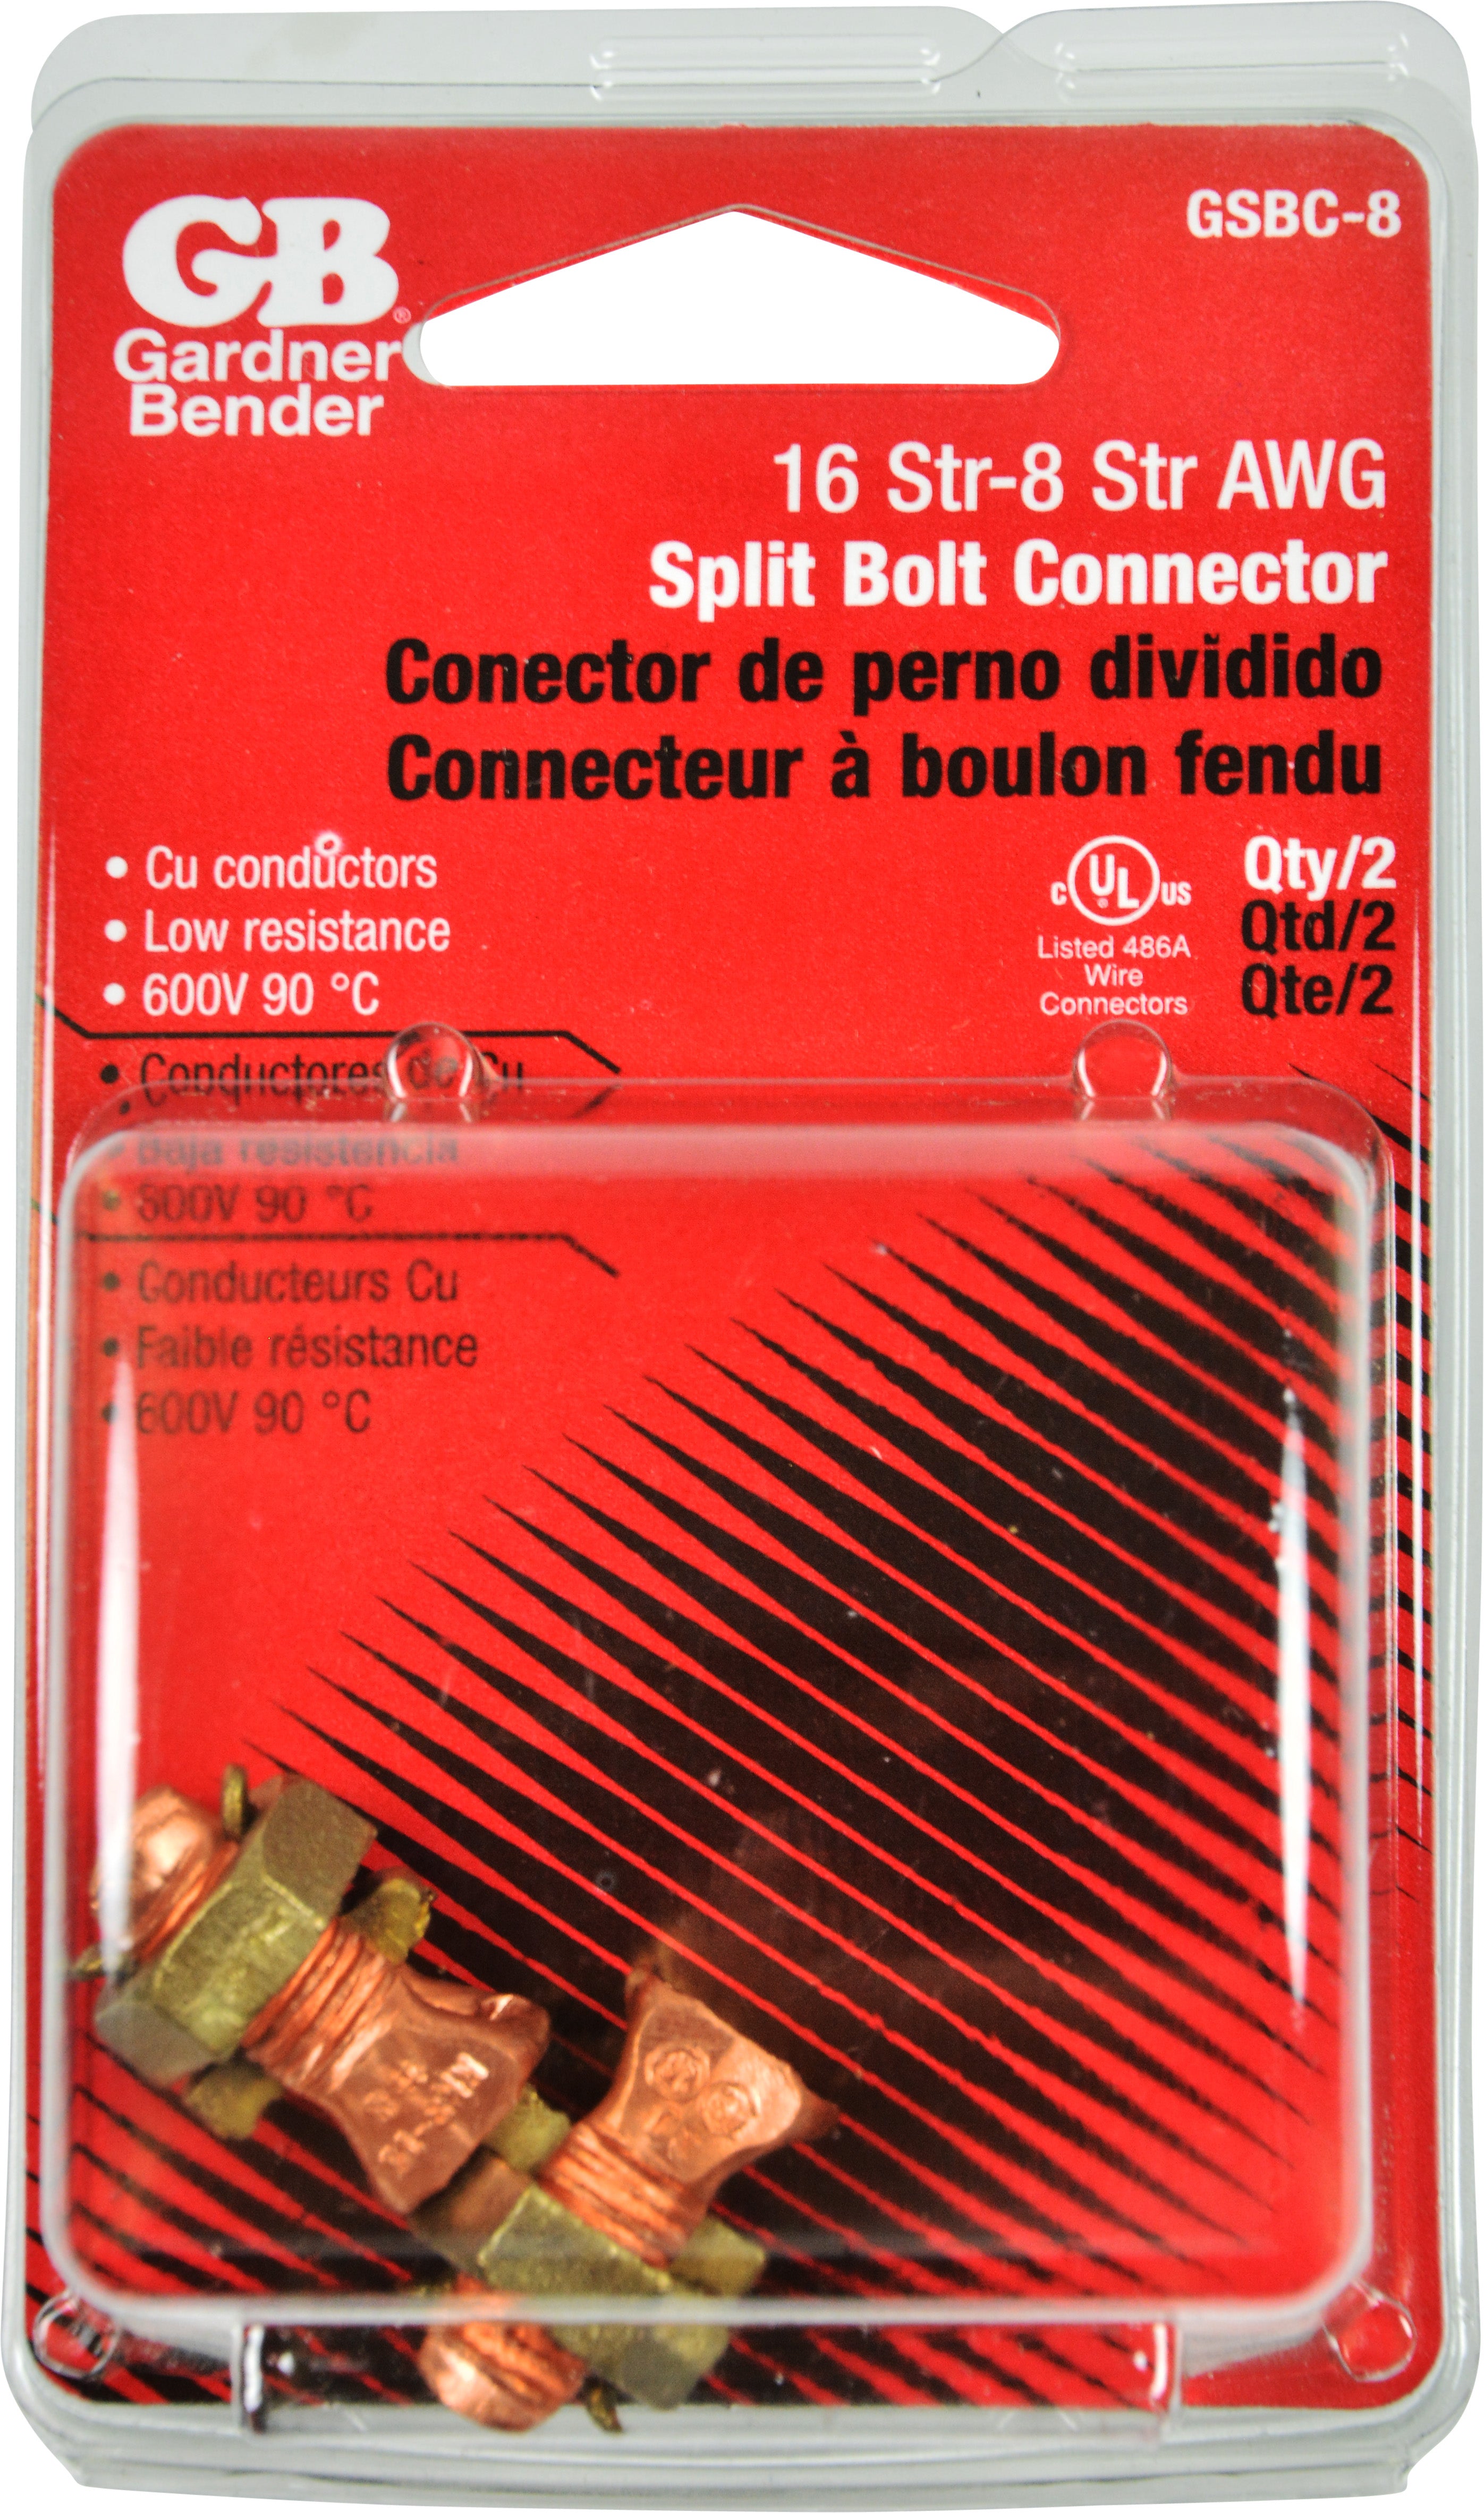 Gardner Bender GSBC-8 16 Str-8 Str AWG Solid Copper Split Bolt Connector 2 Pack